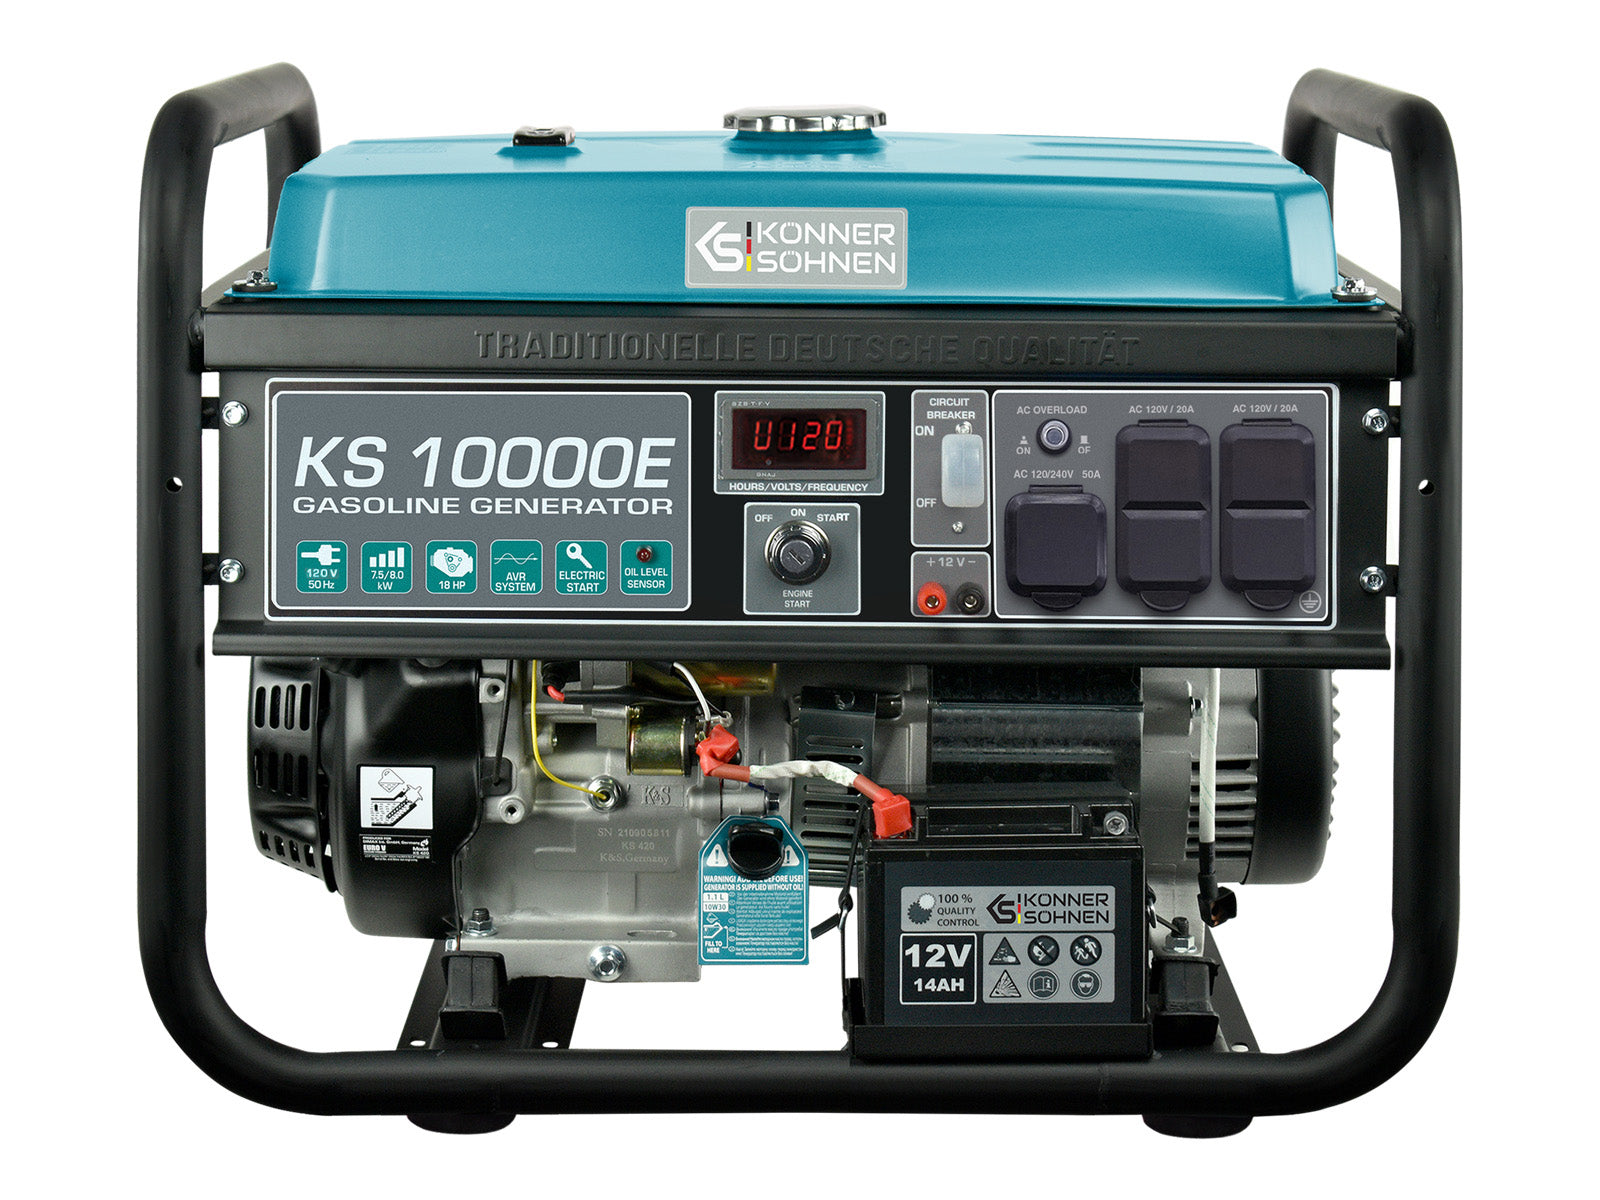 Generador de gasolina KS 10000E